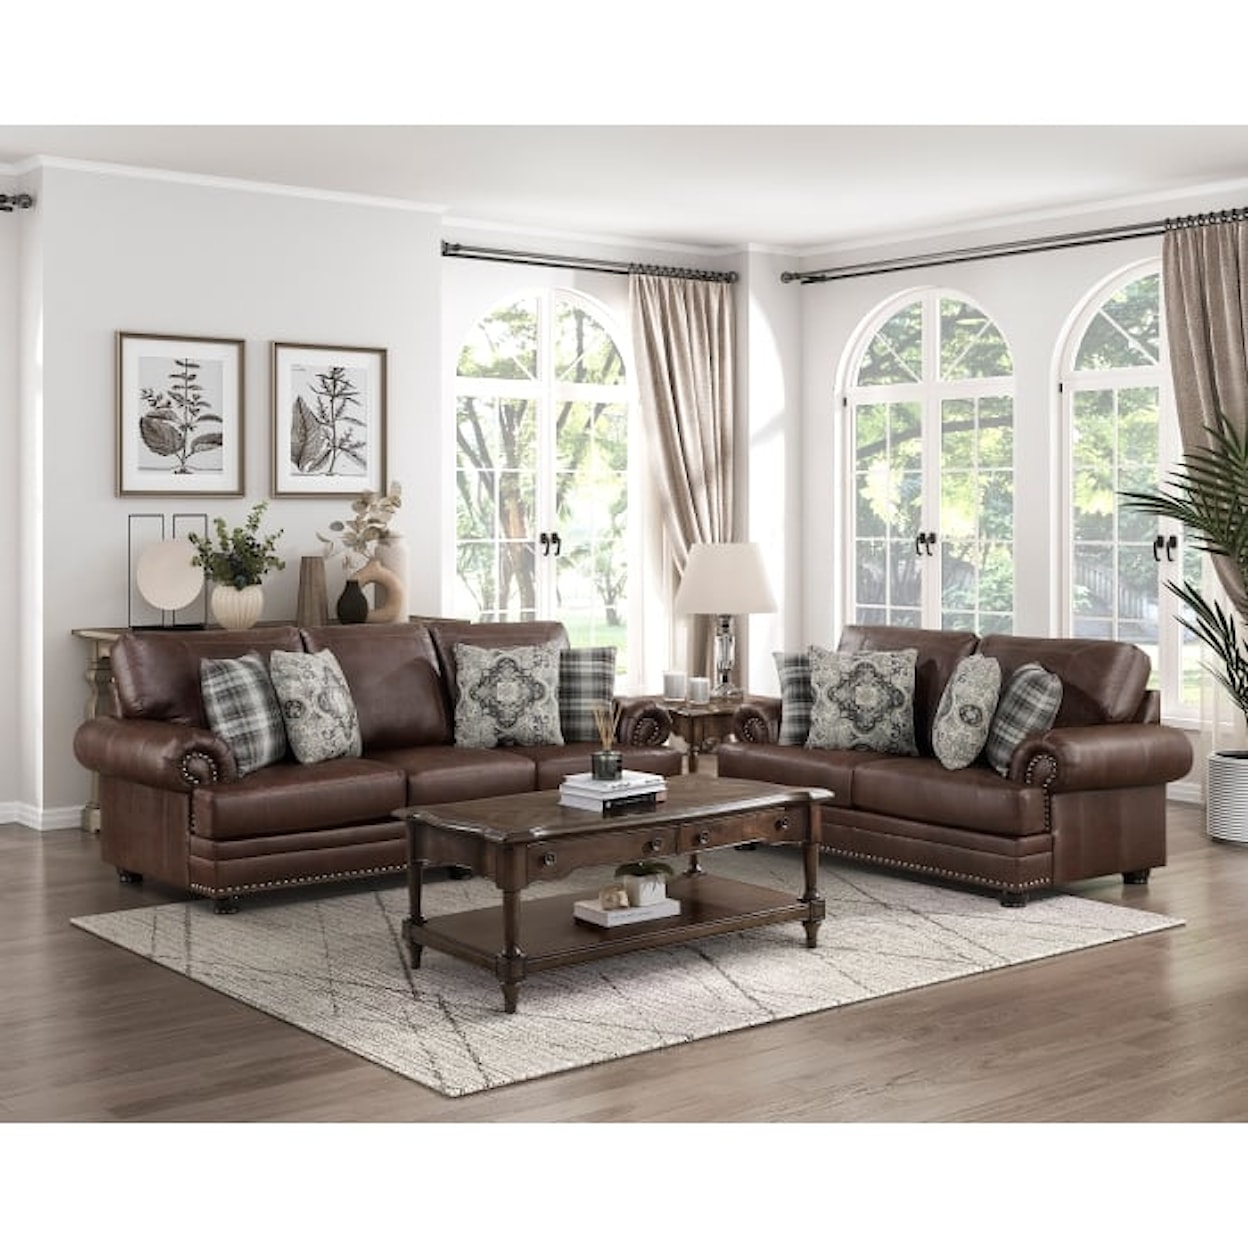 Homelegance Furniture Franklin 2-Piece Living Room Set